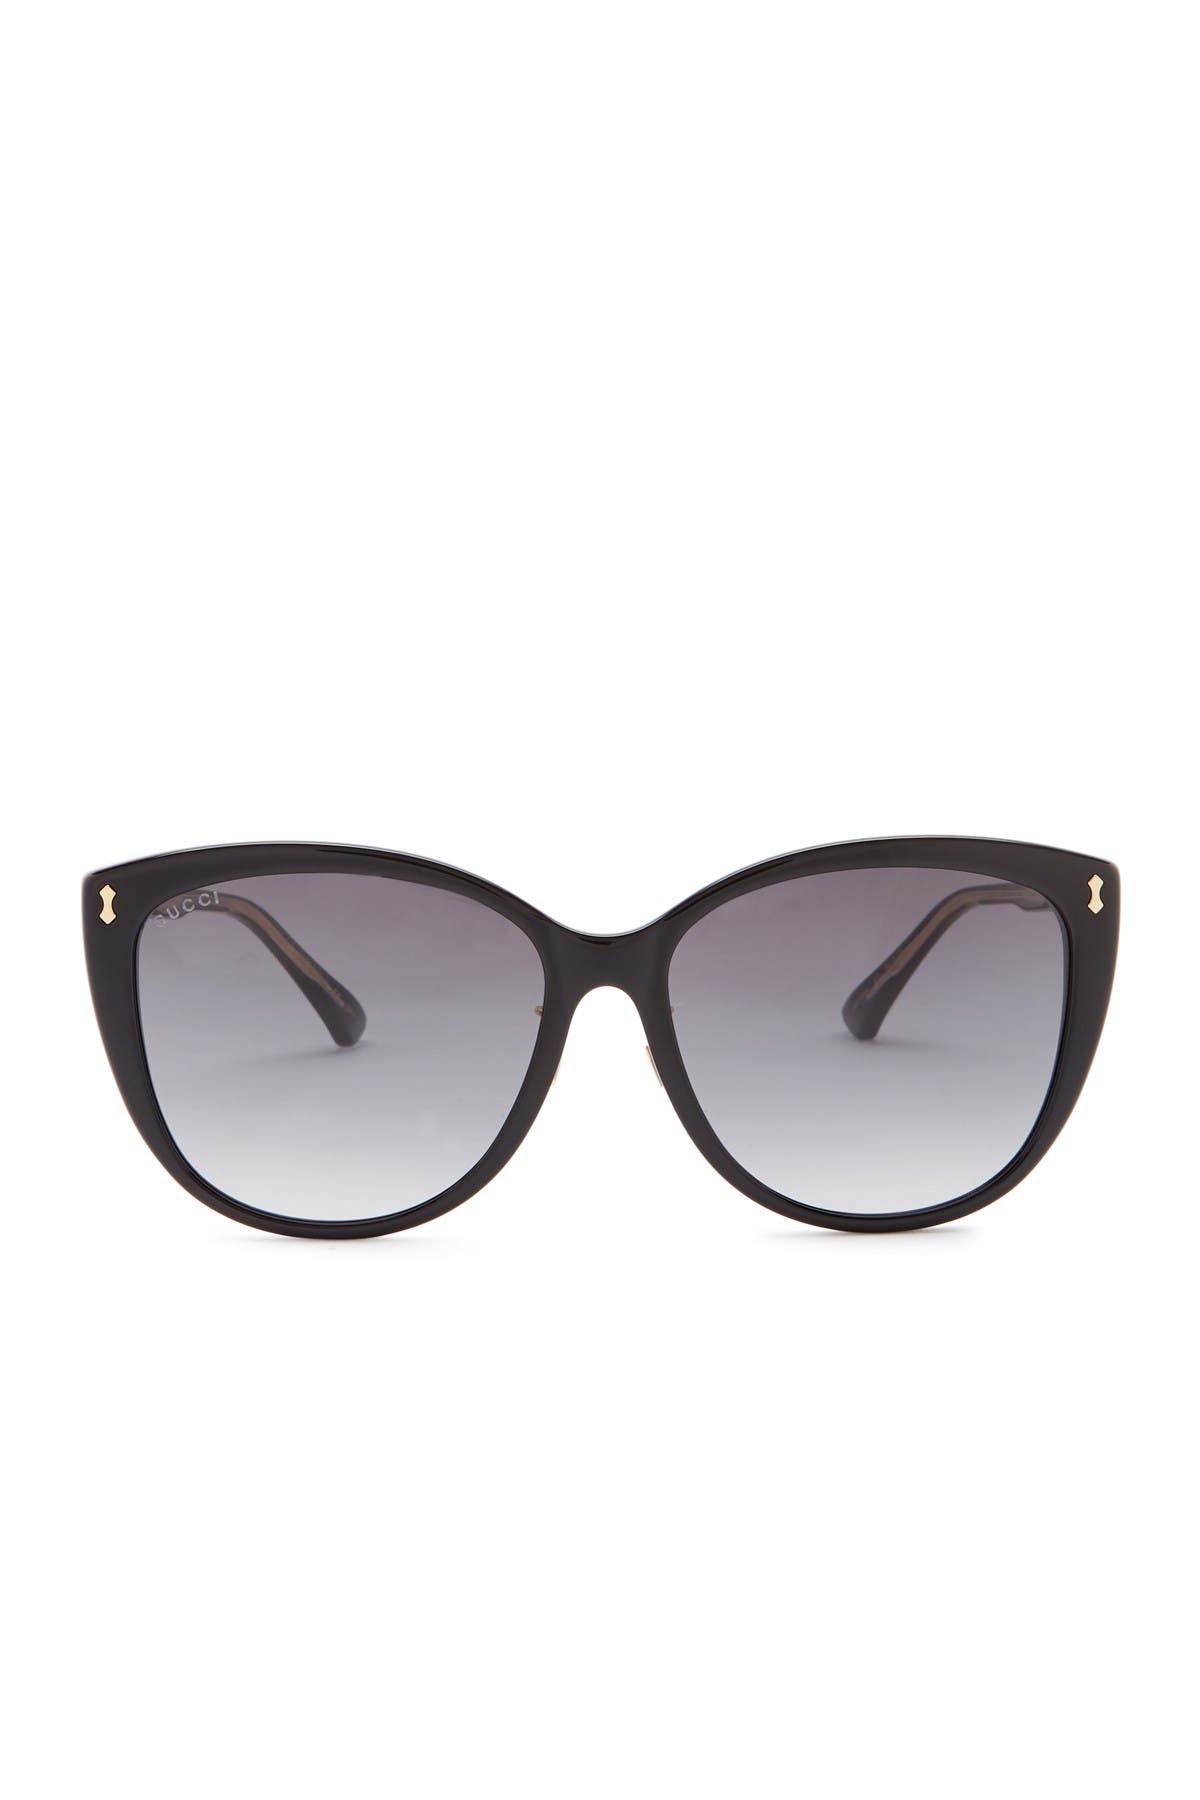 GUCCI | 58mm Cat Eye Sunglasses 